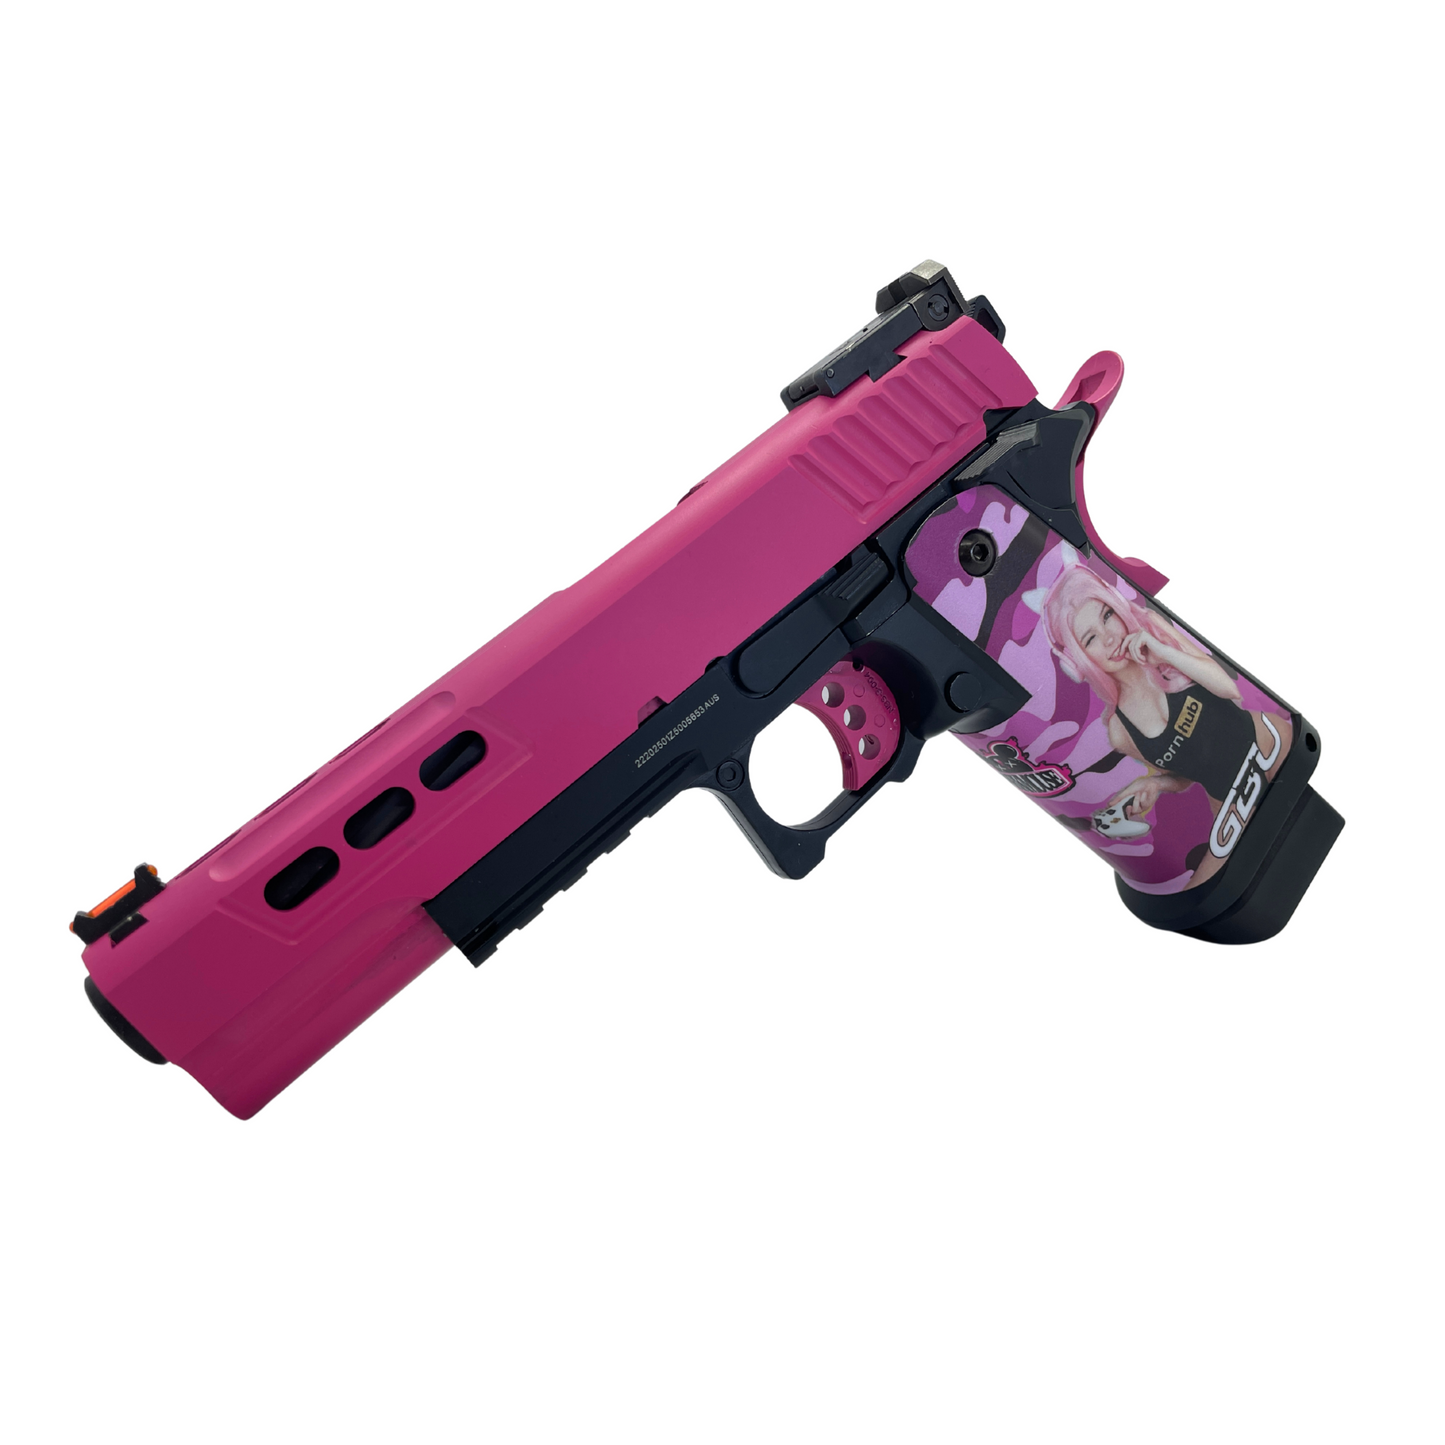 Custom "Hot Pink" Cerakoted G/E 5.1 Hi-Capa Gas Pistol - Gel Blaster